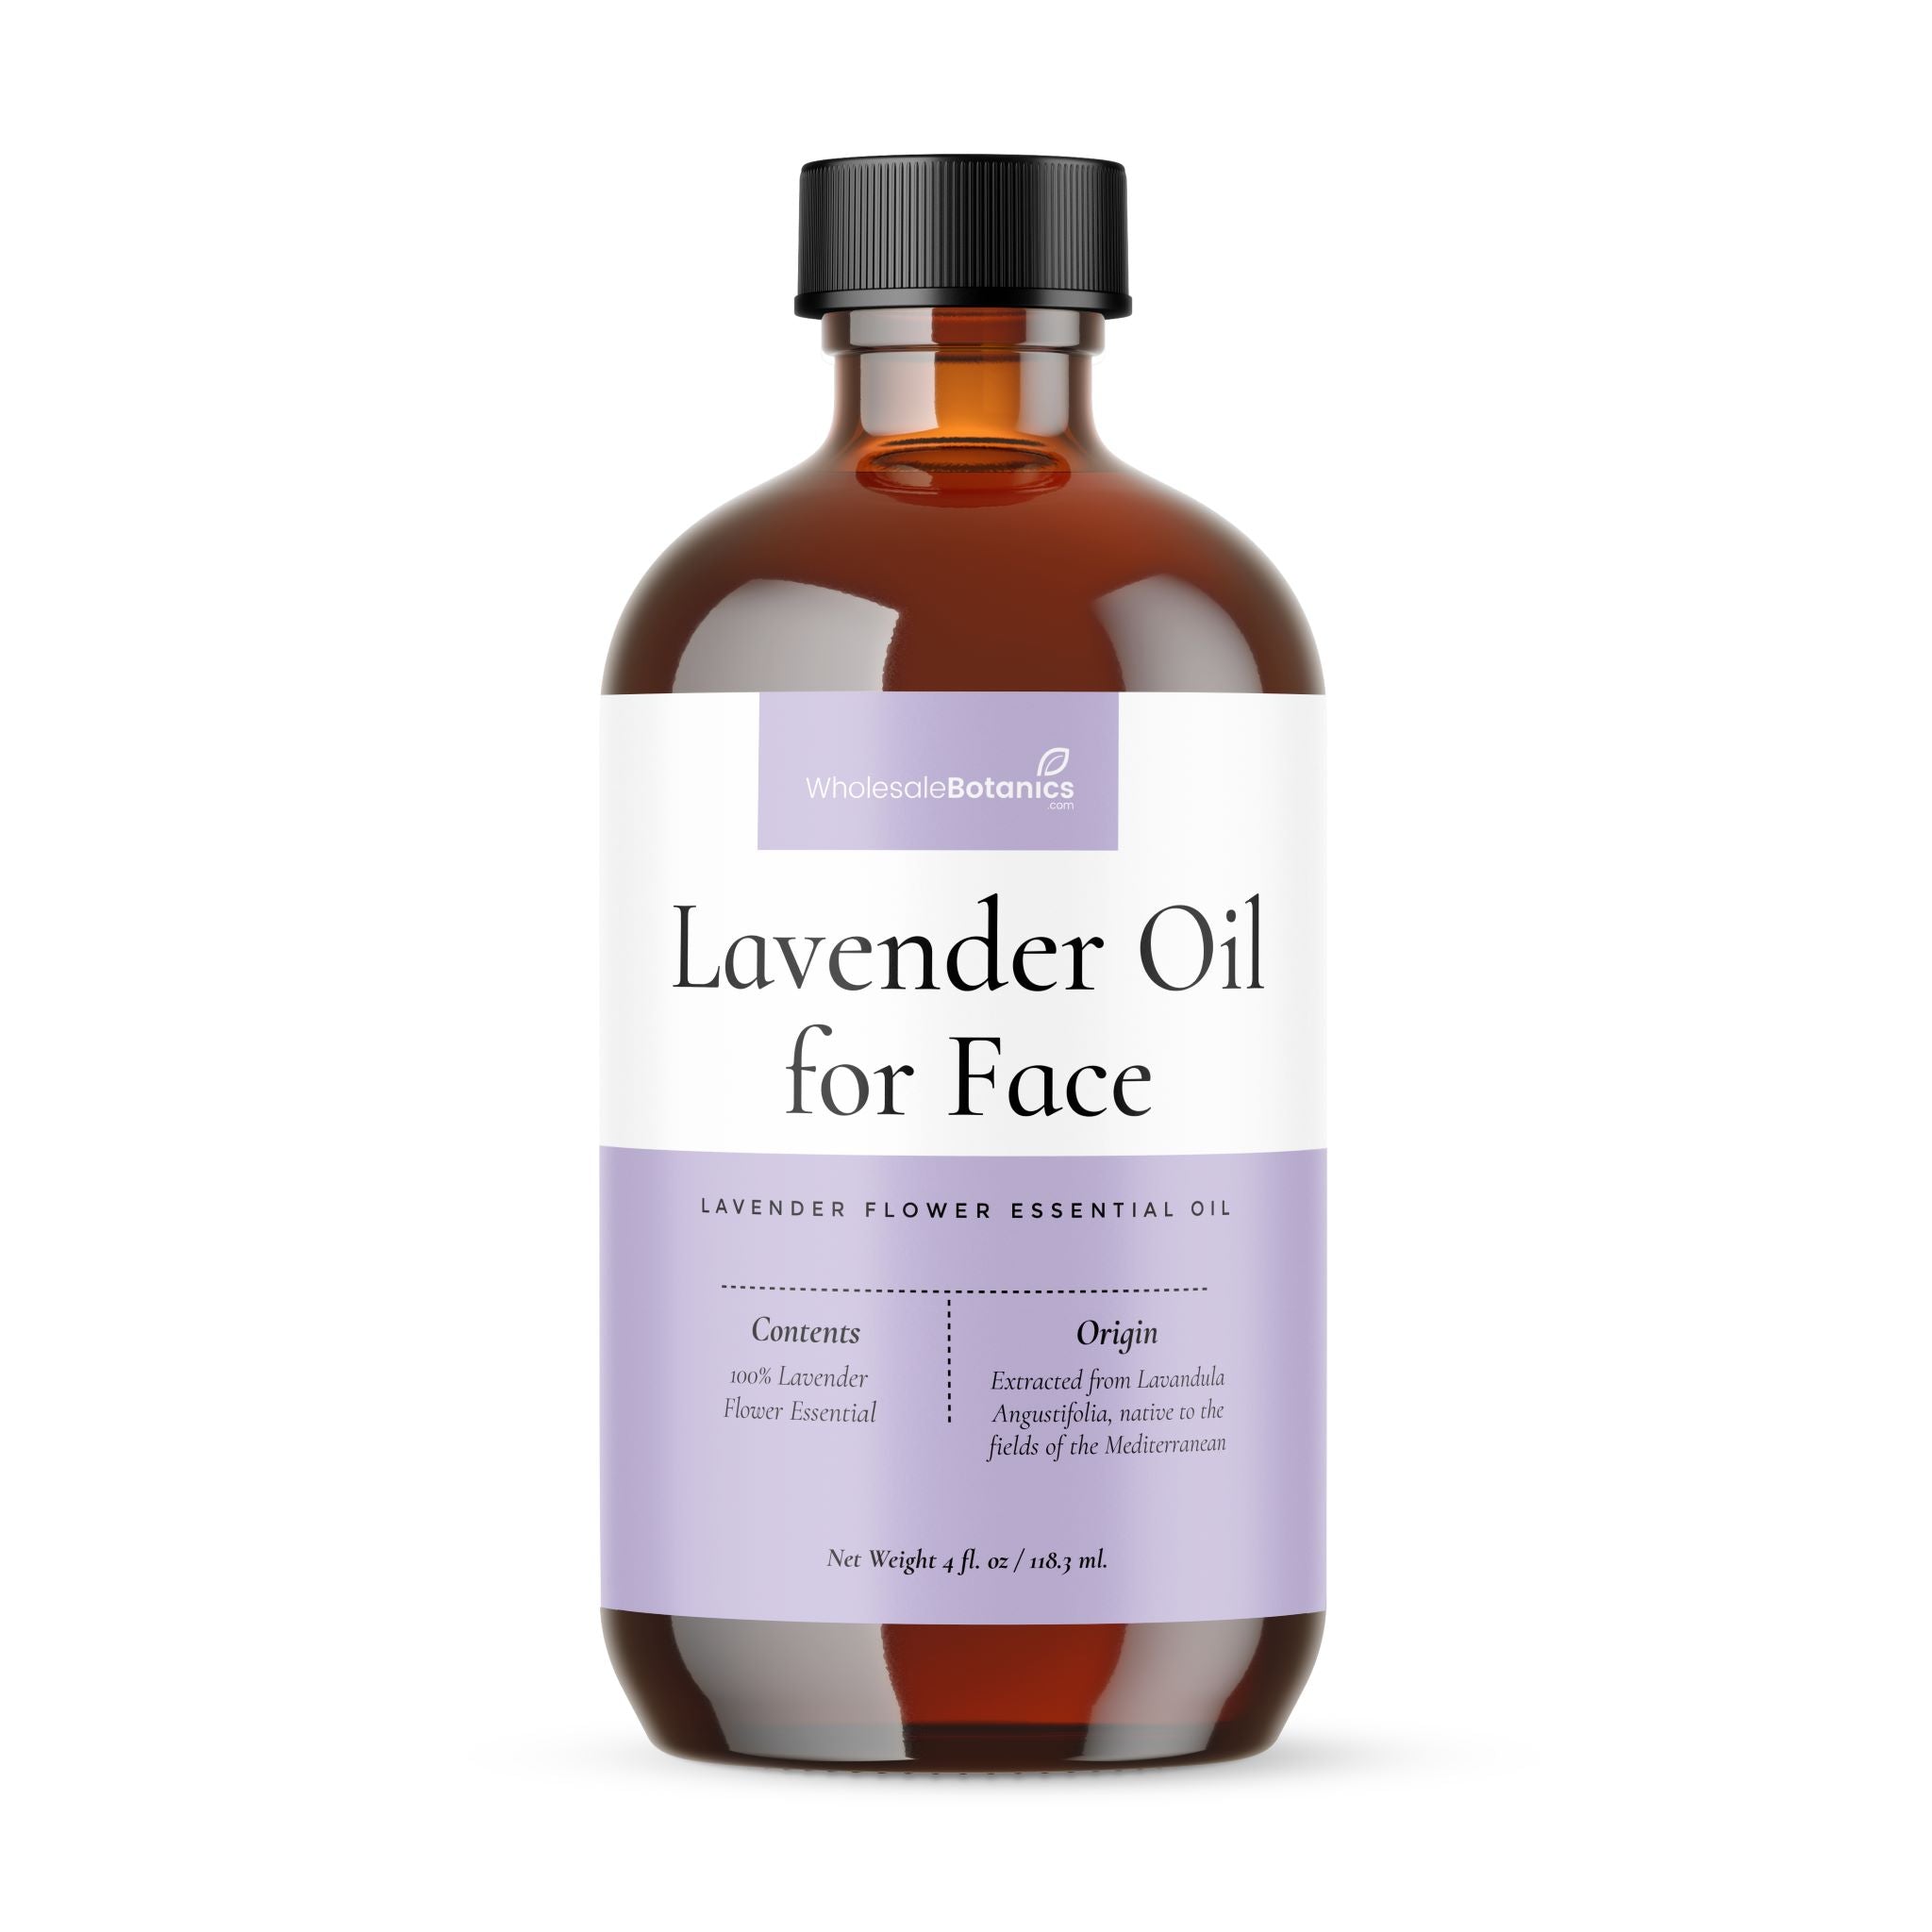 Lavender Oil for Face